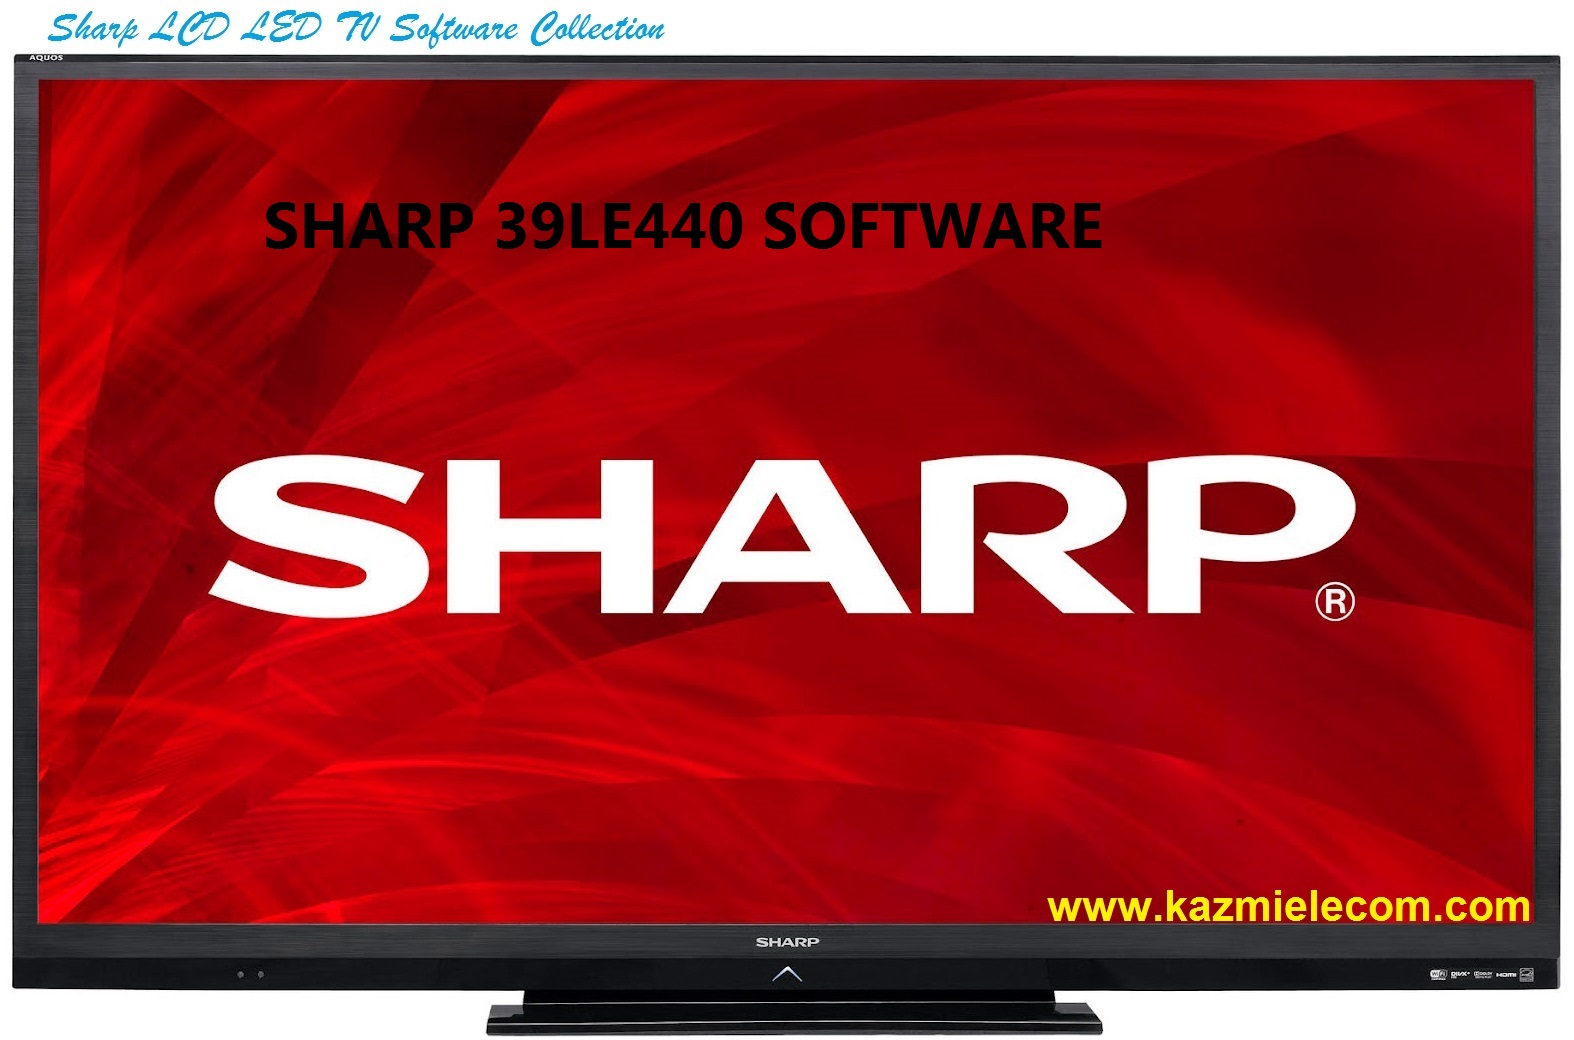 Sharp 39Le440